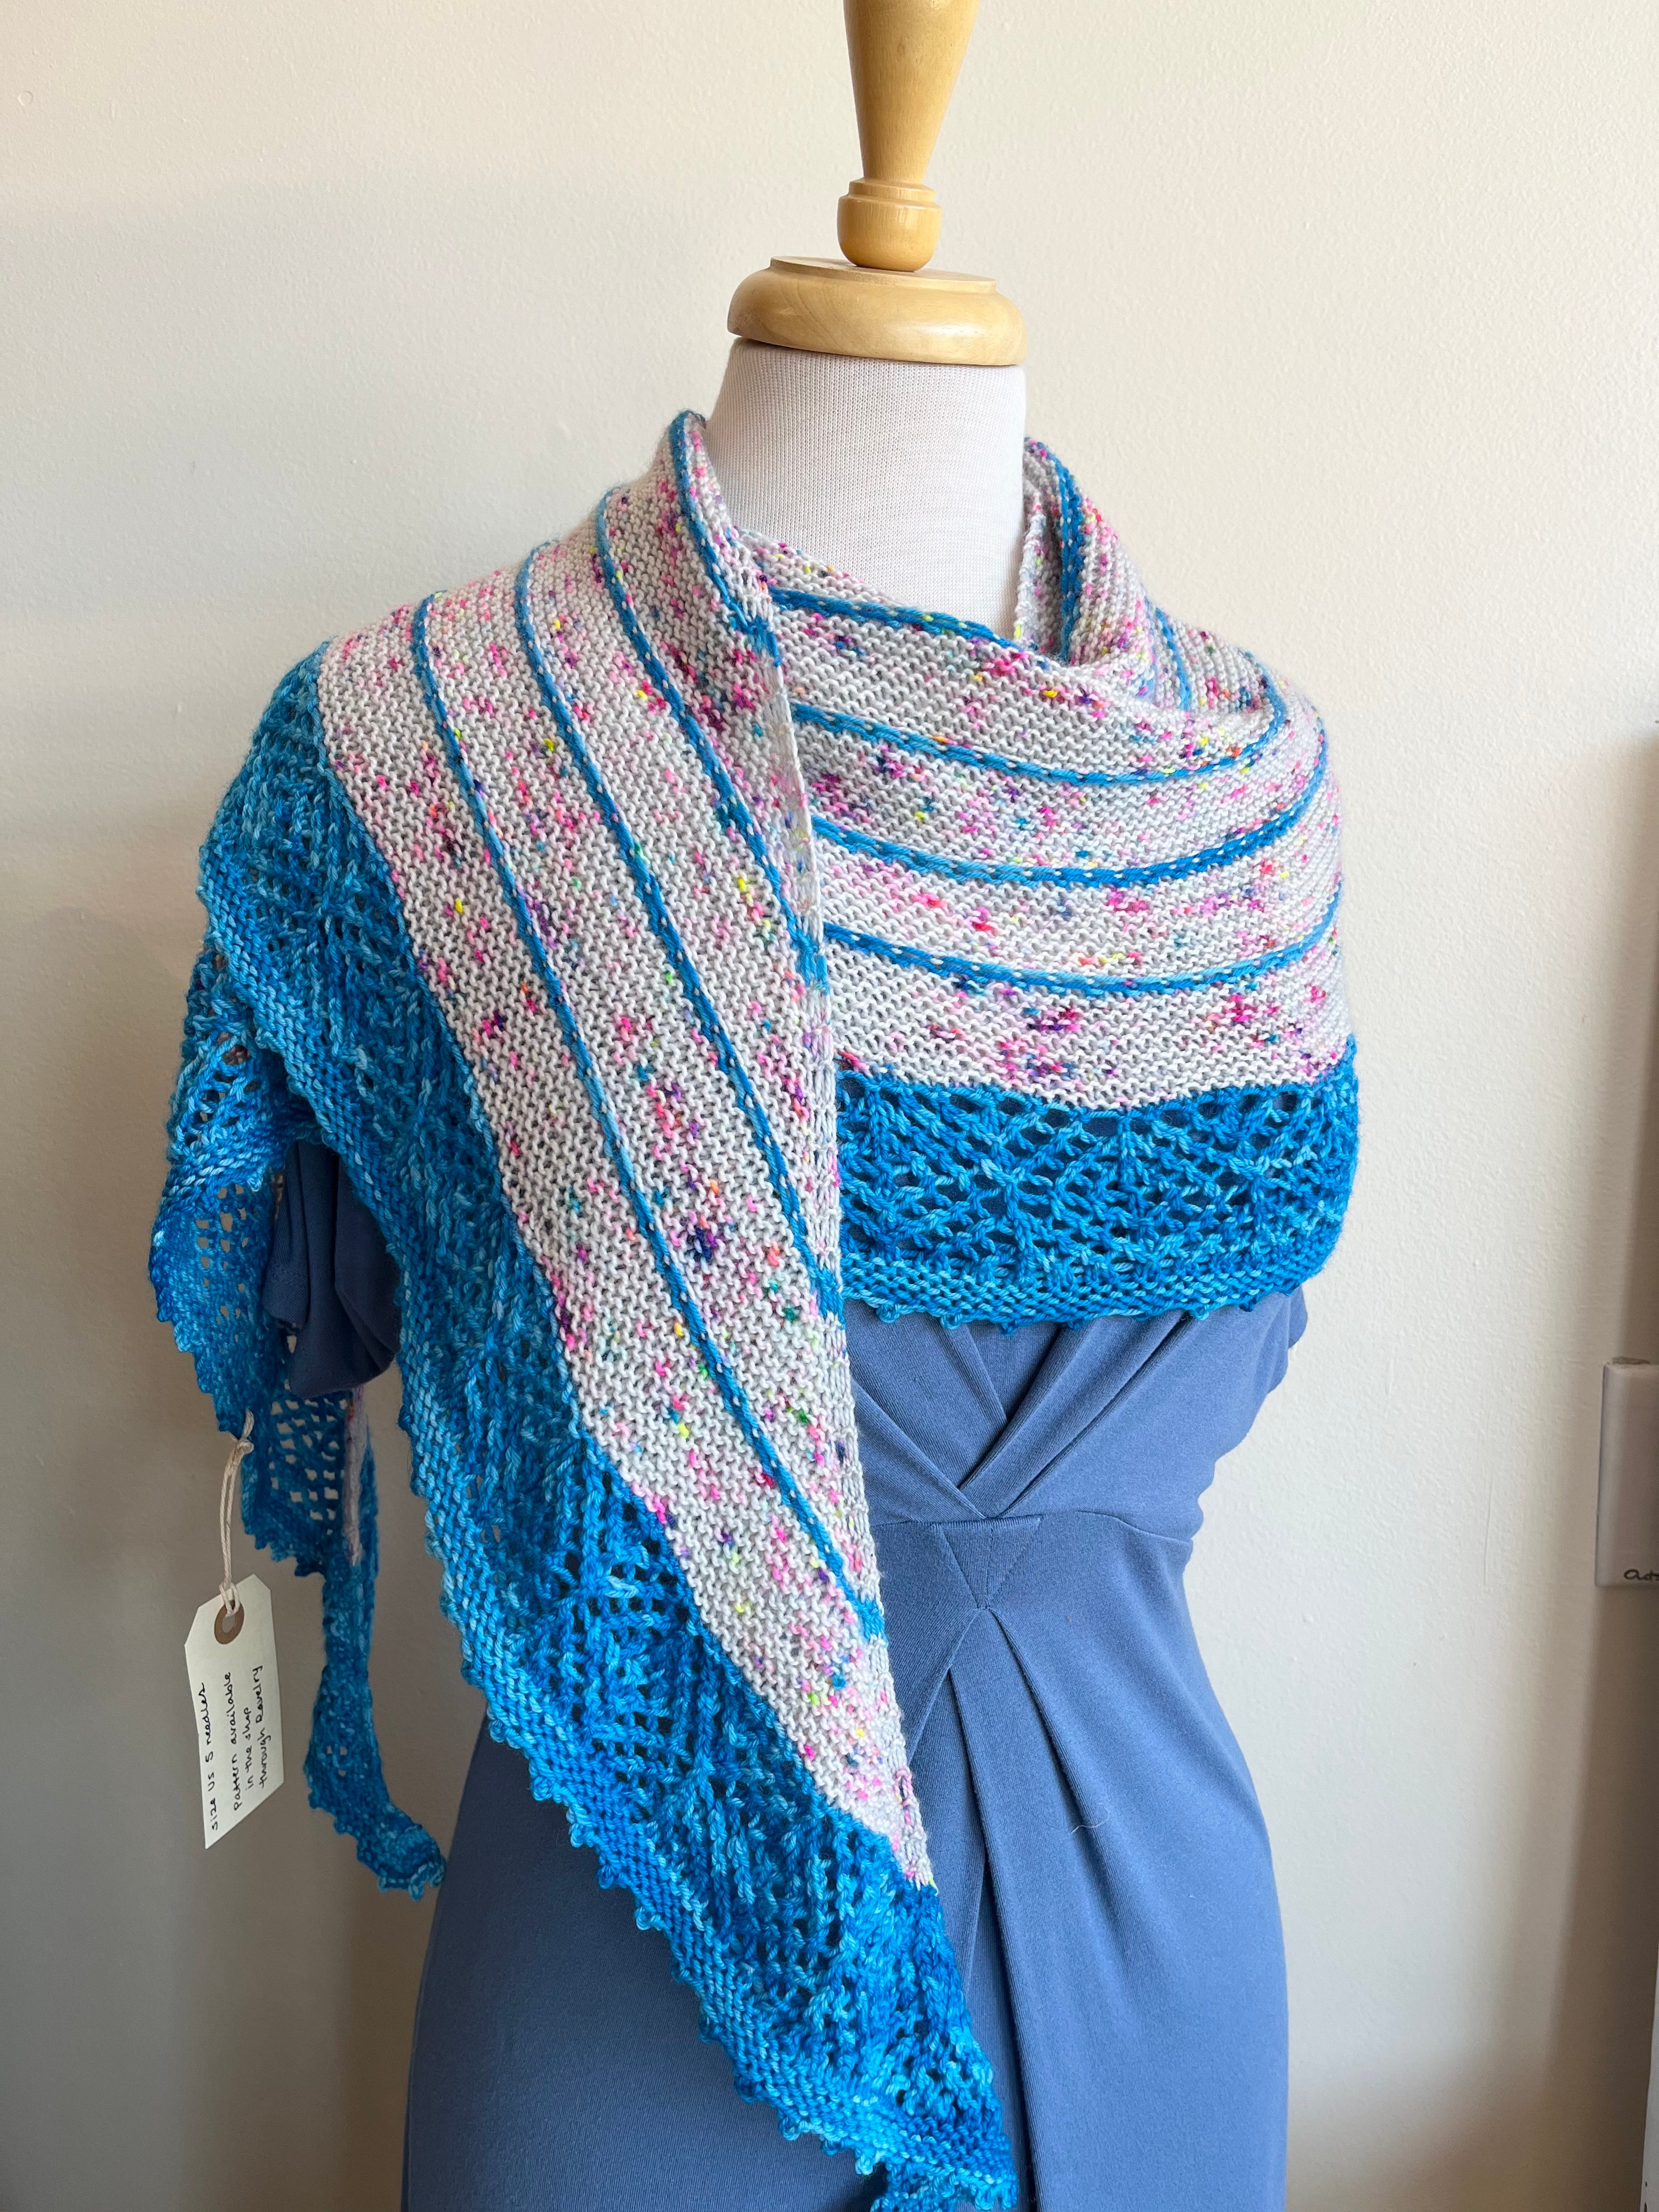 Ebba's Garden shawl kit